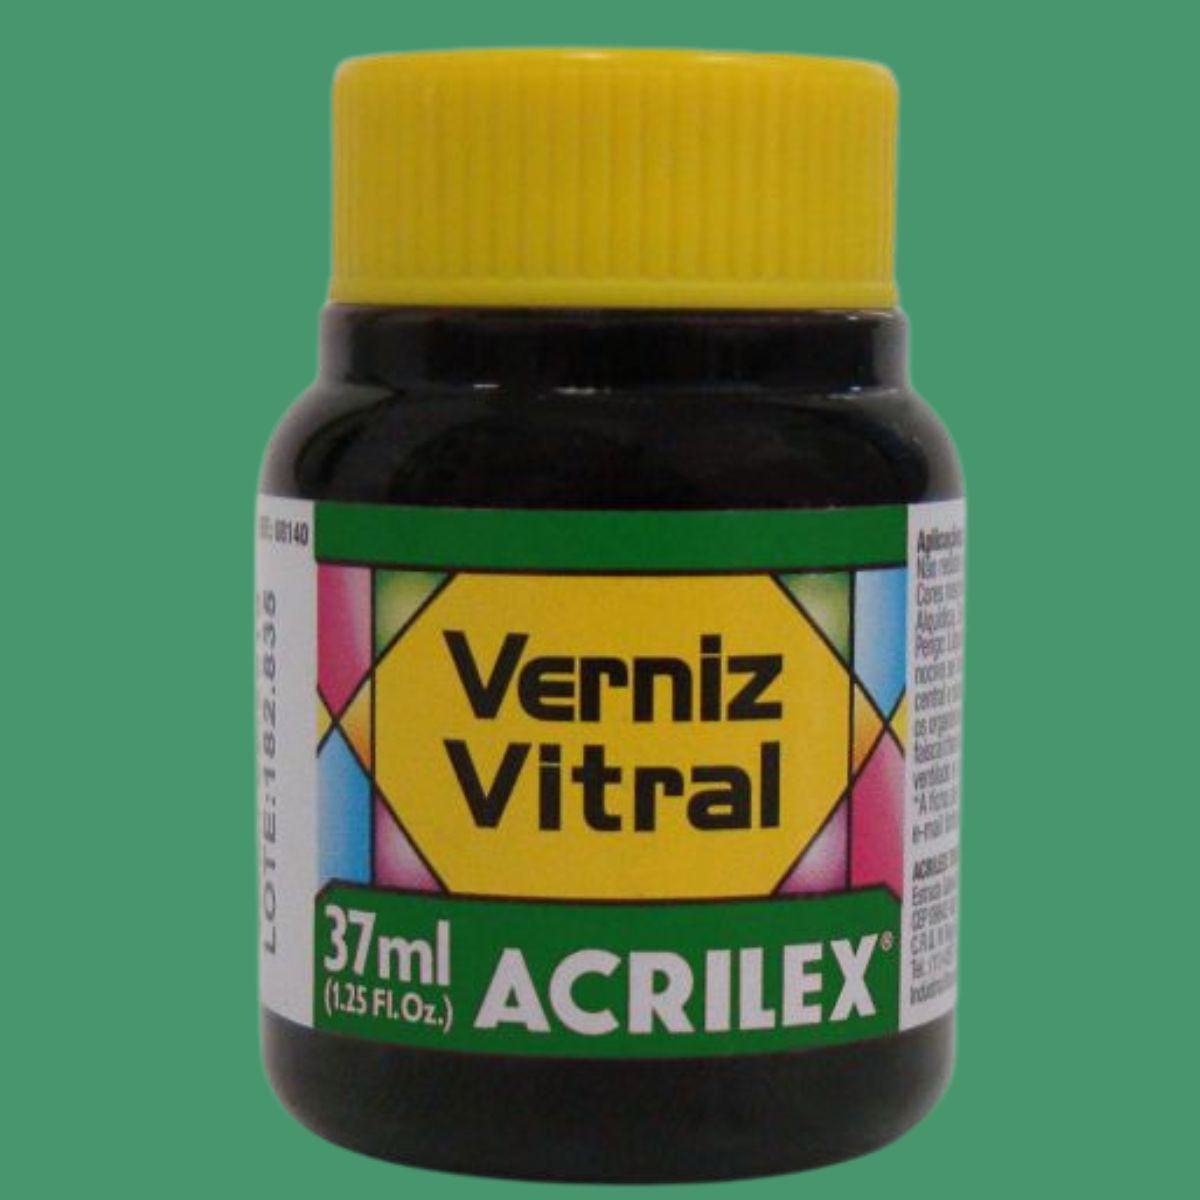 Verniz Vitral Acrilex 37ml Transparente e Brilhante - Palácio da Arte